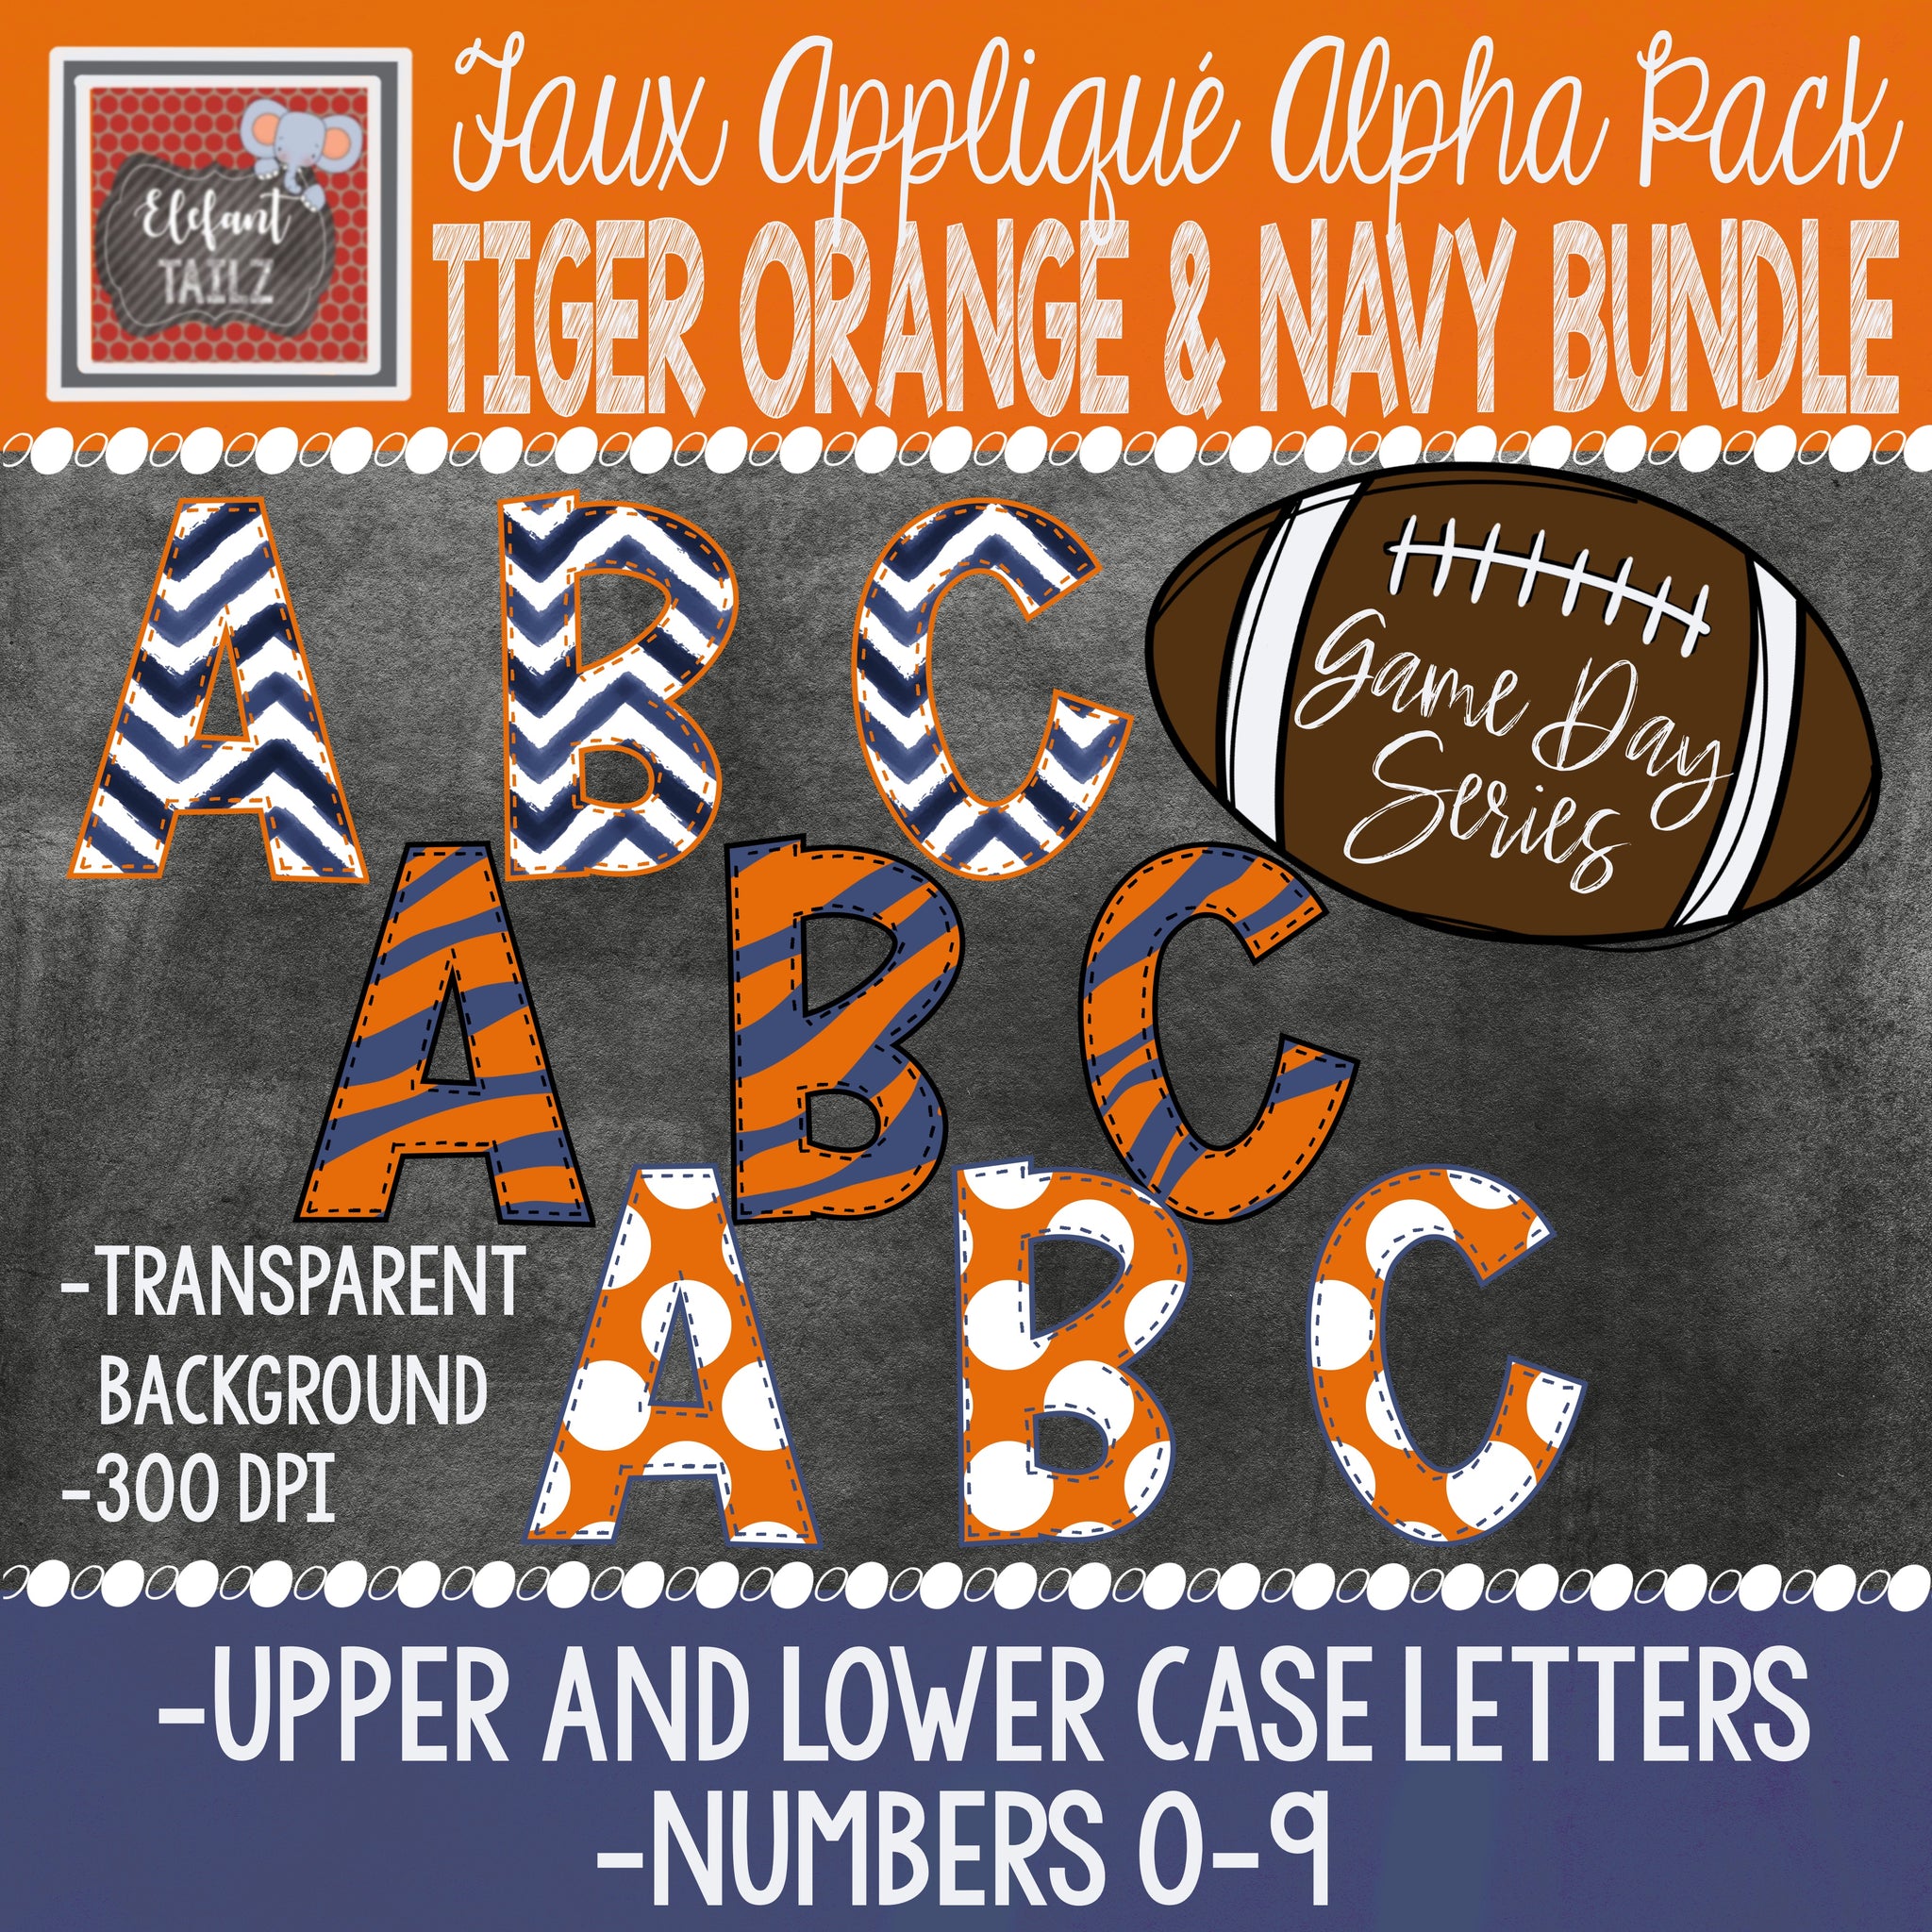 Game Day Series Alpha & Number Pack - Tiger Orange & Navy